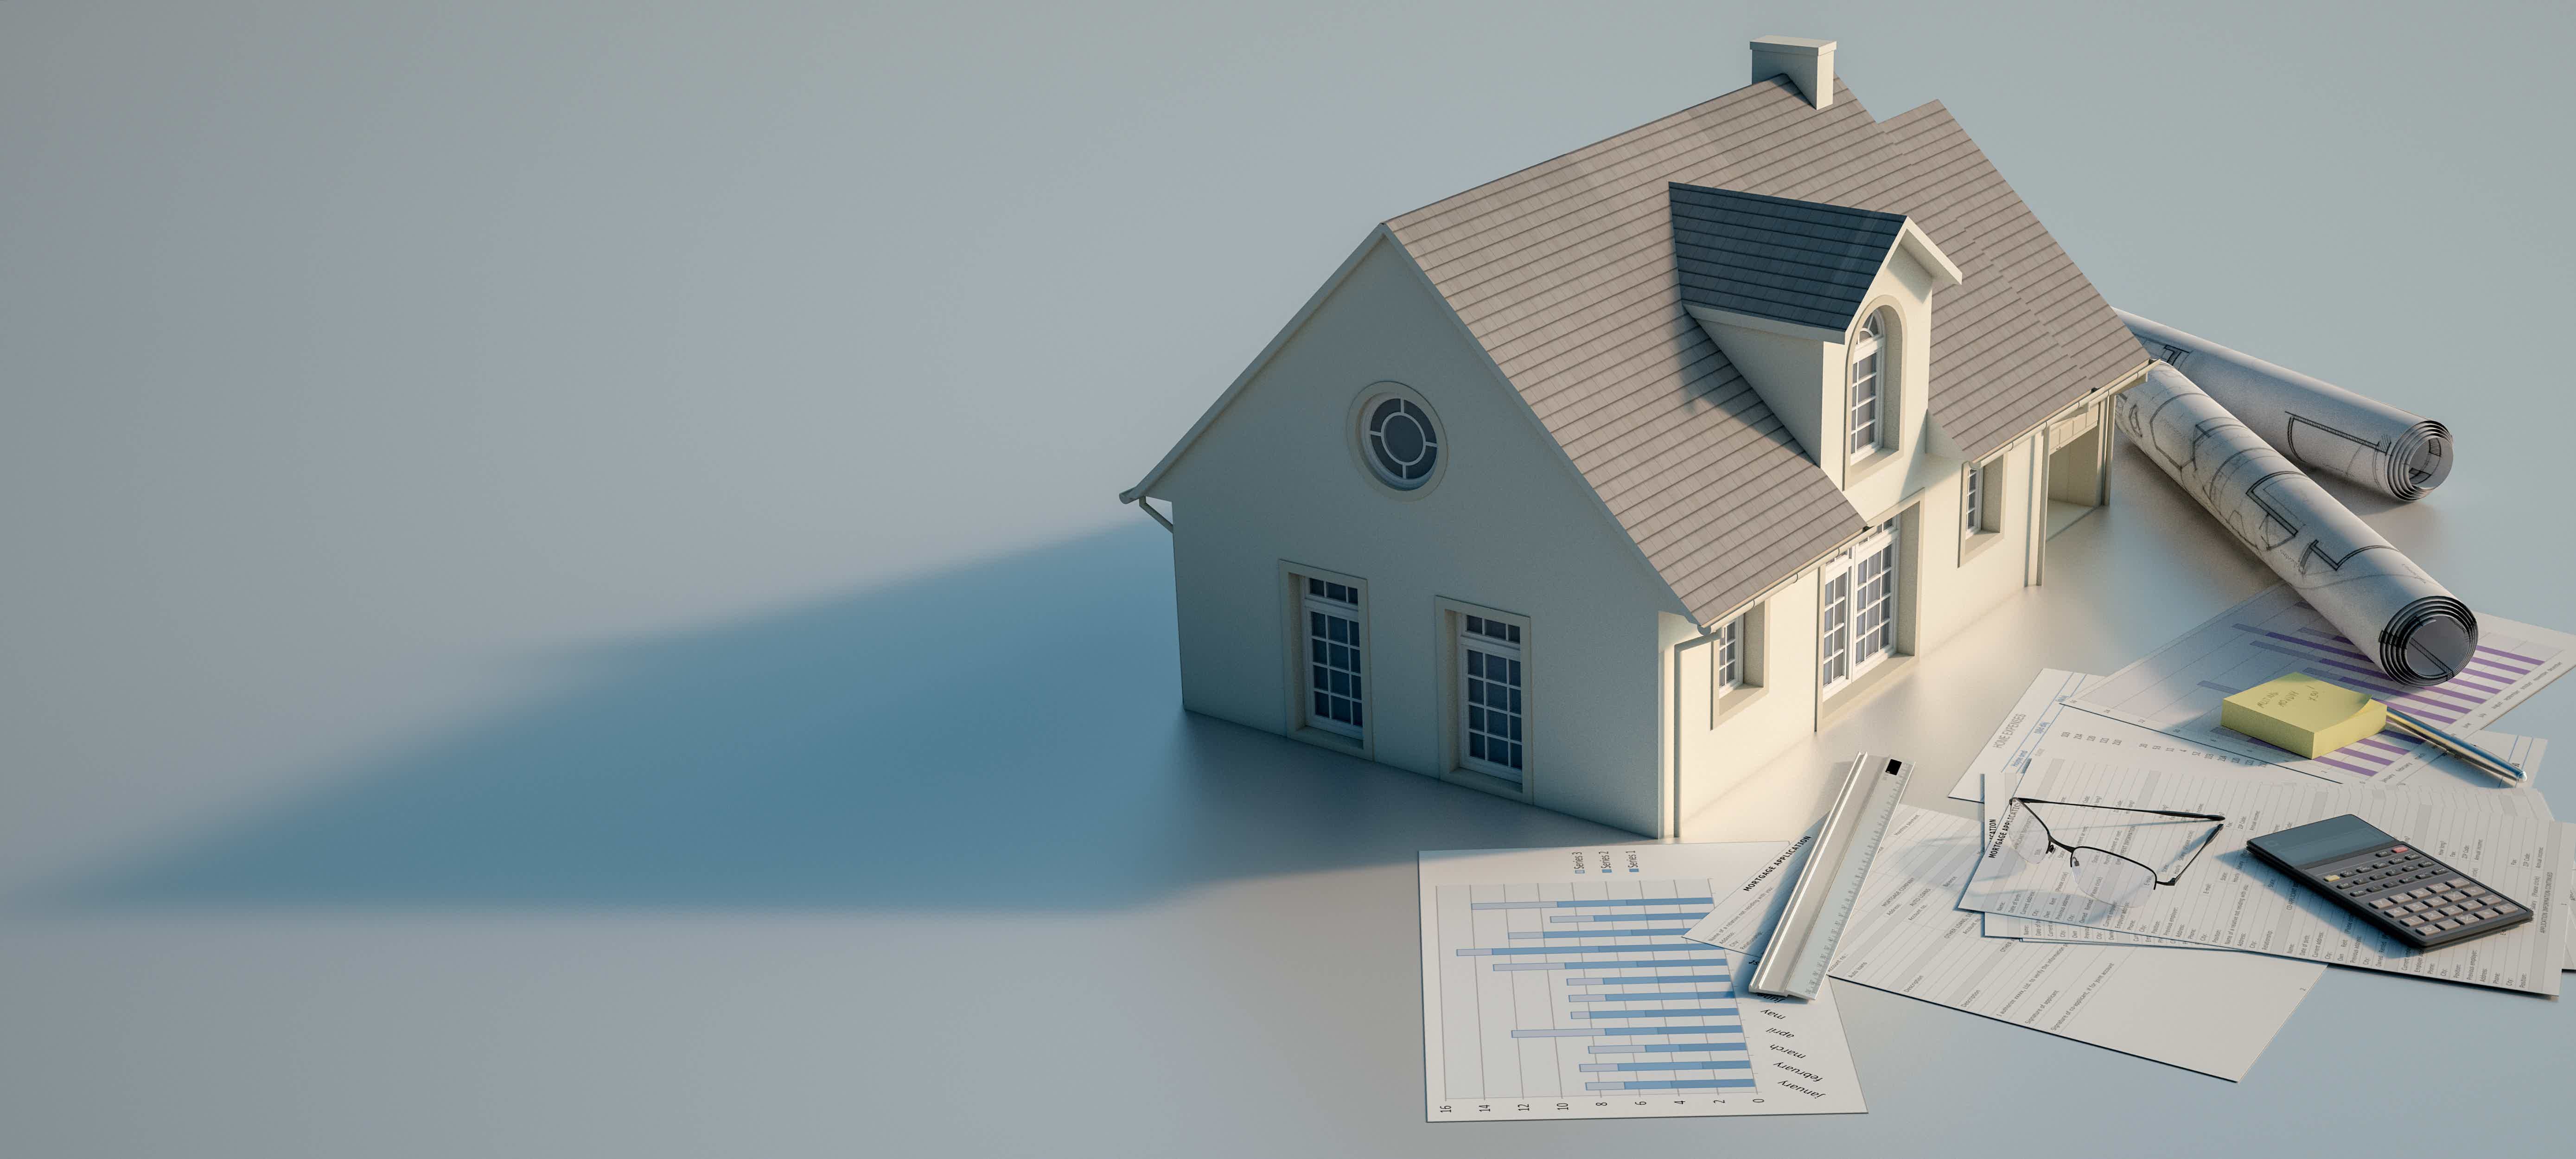 O financiamento pode ser uma ótima forma de conseguir a casa própria! Fonte: Adobe Stock